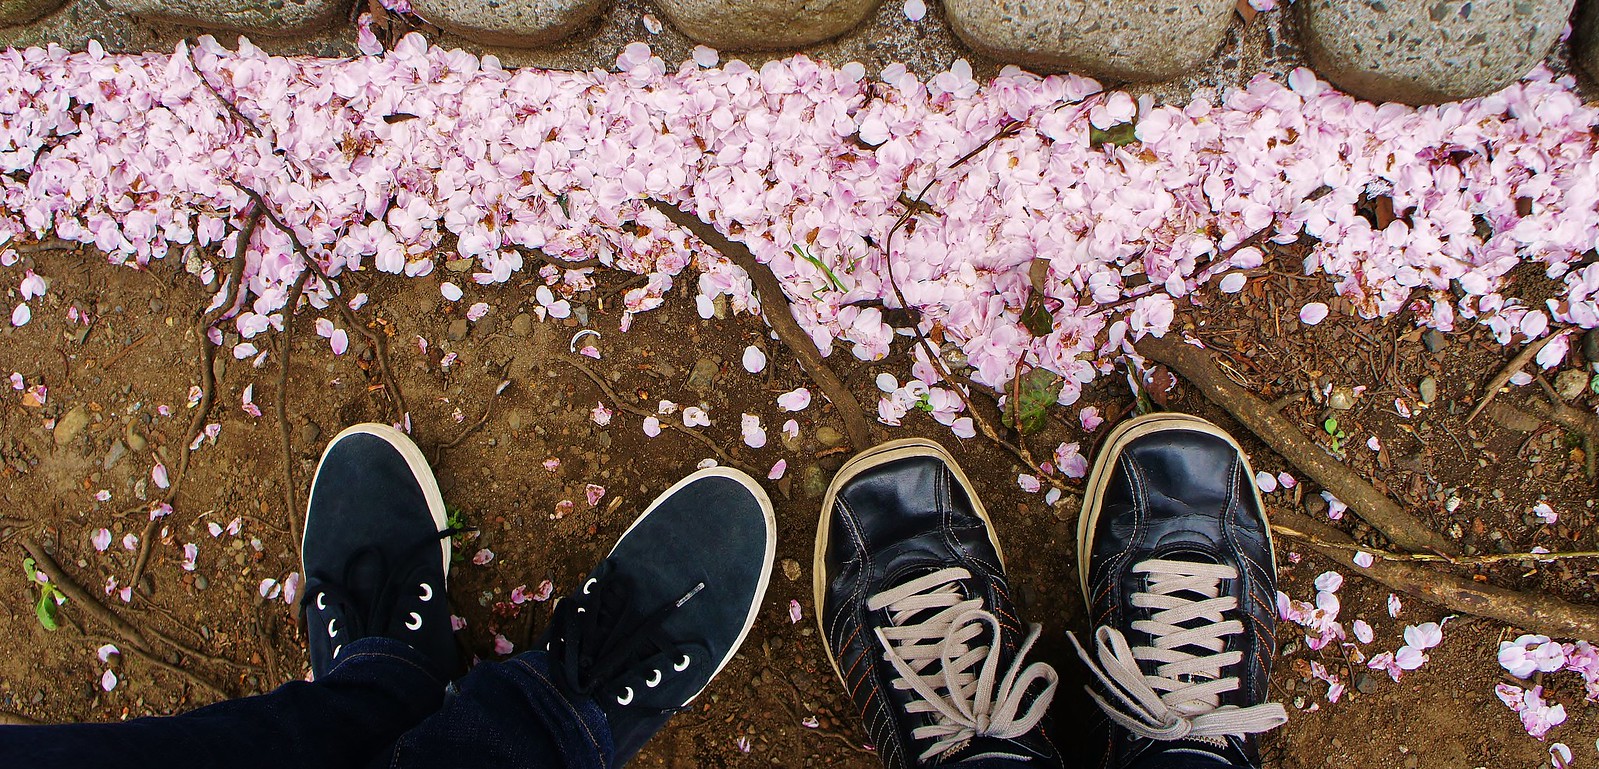 Sakura "fallen" Petals at our feet